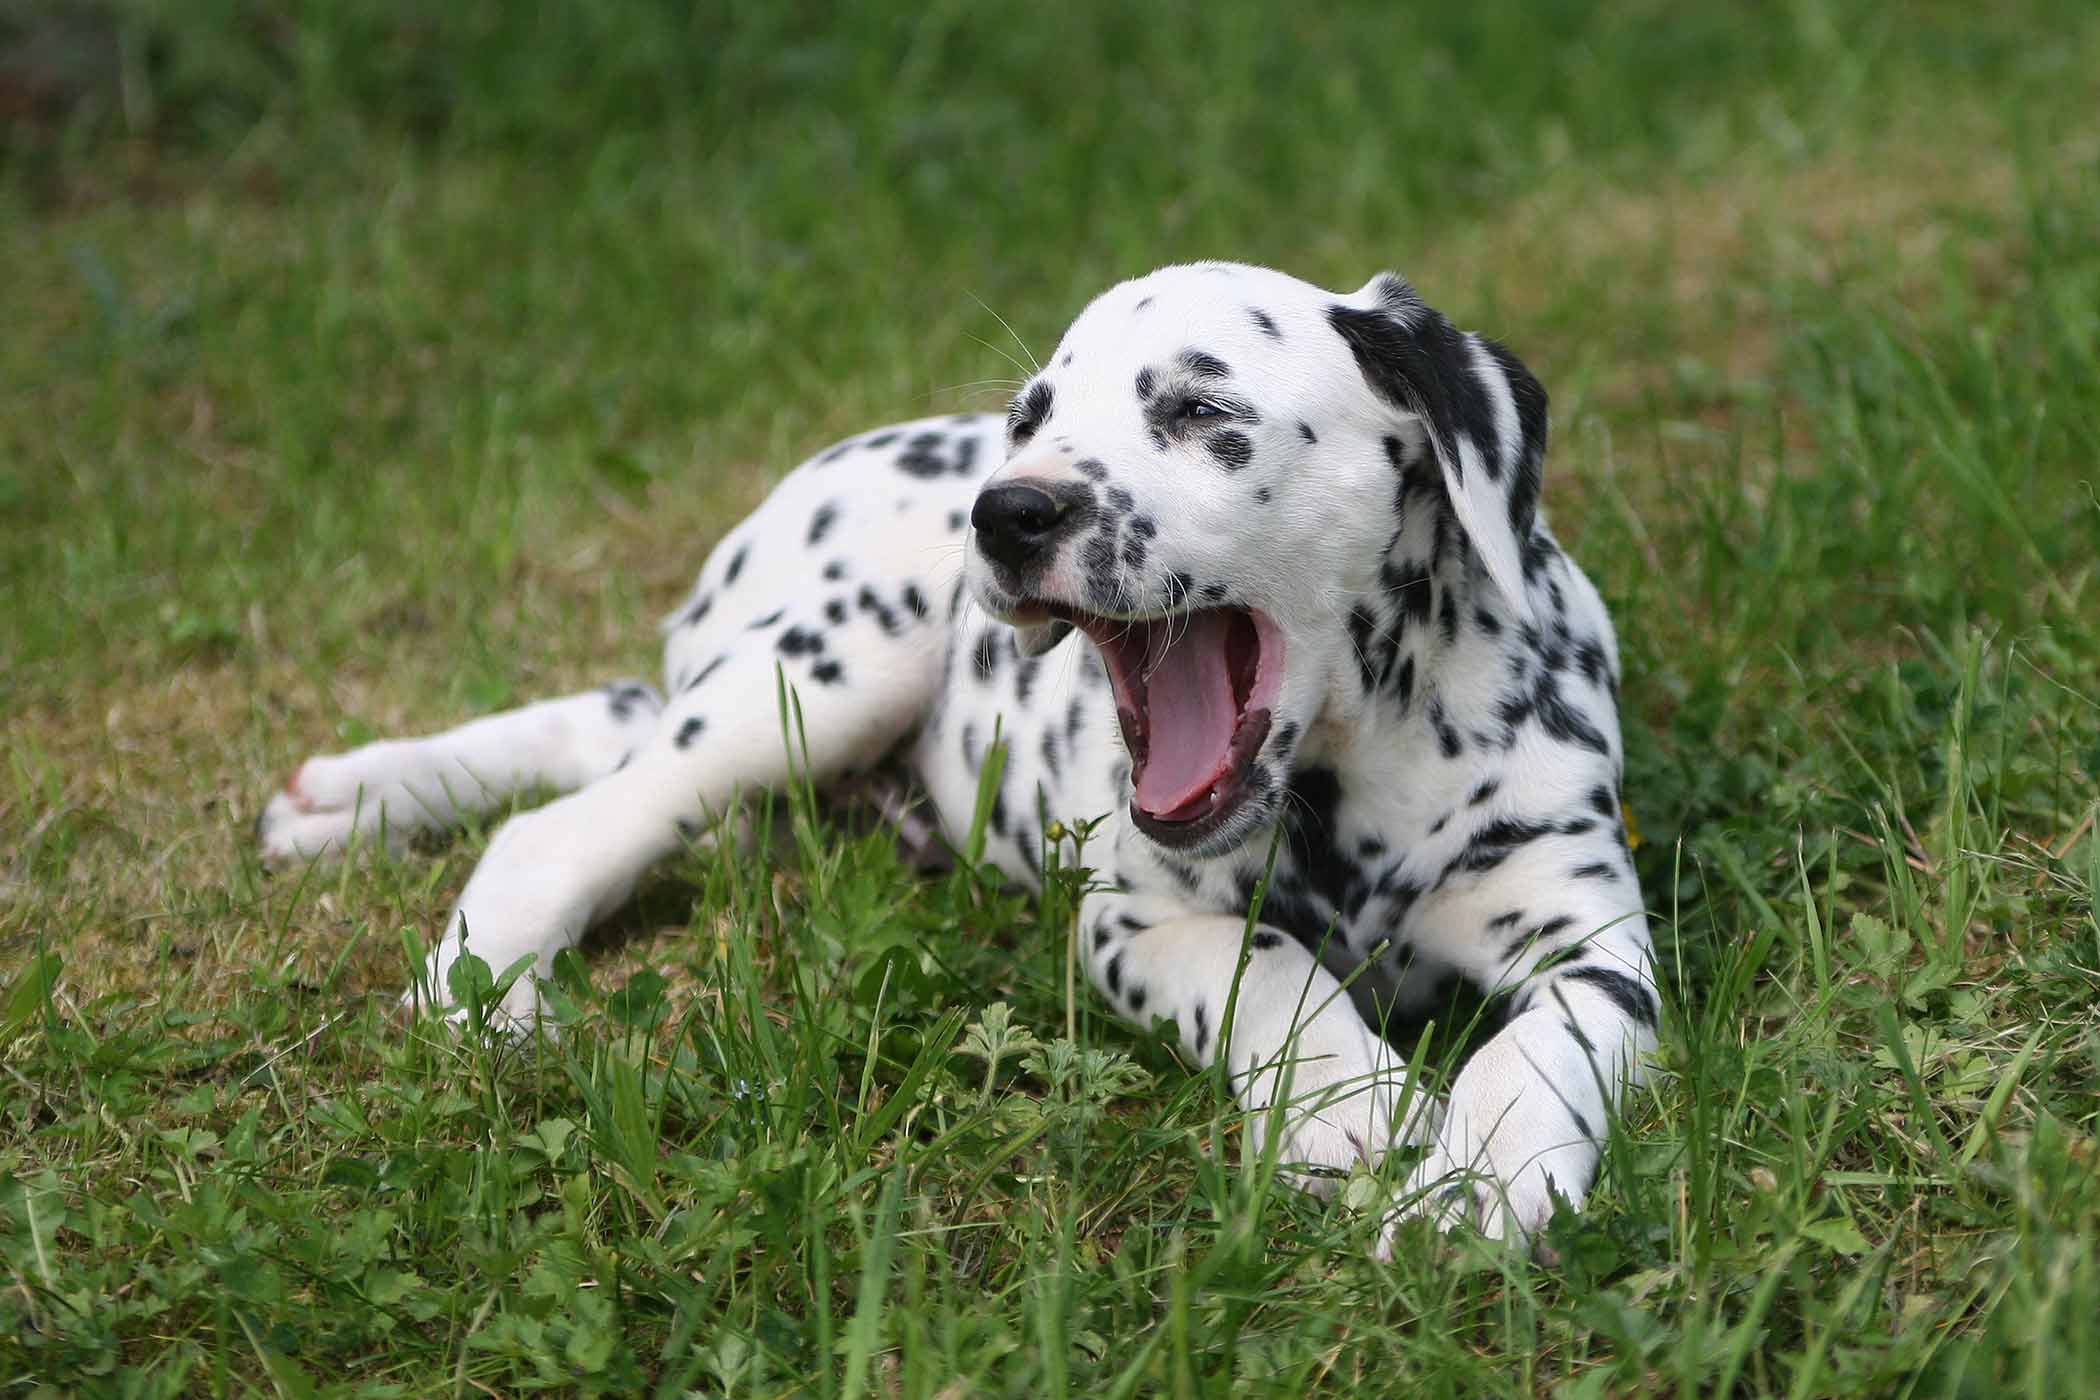 Dalmatian hound mix